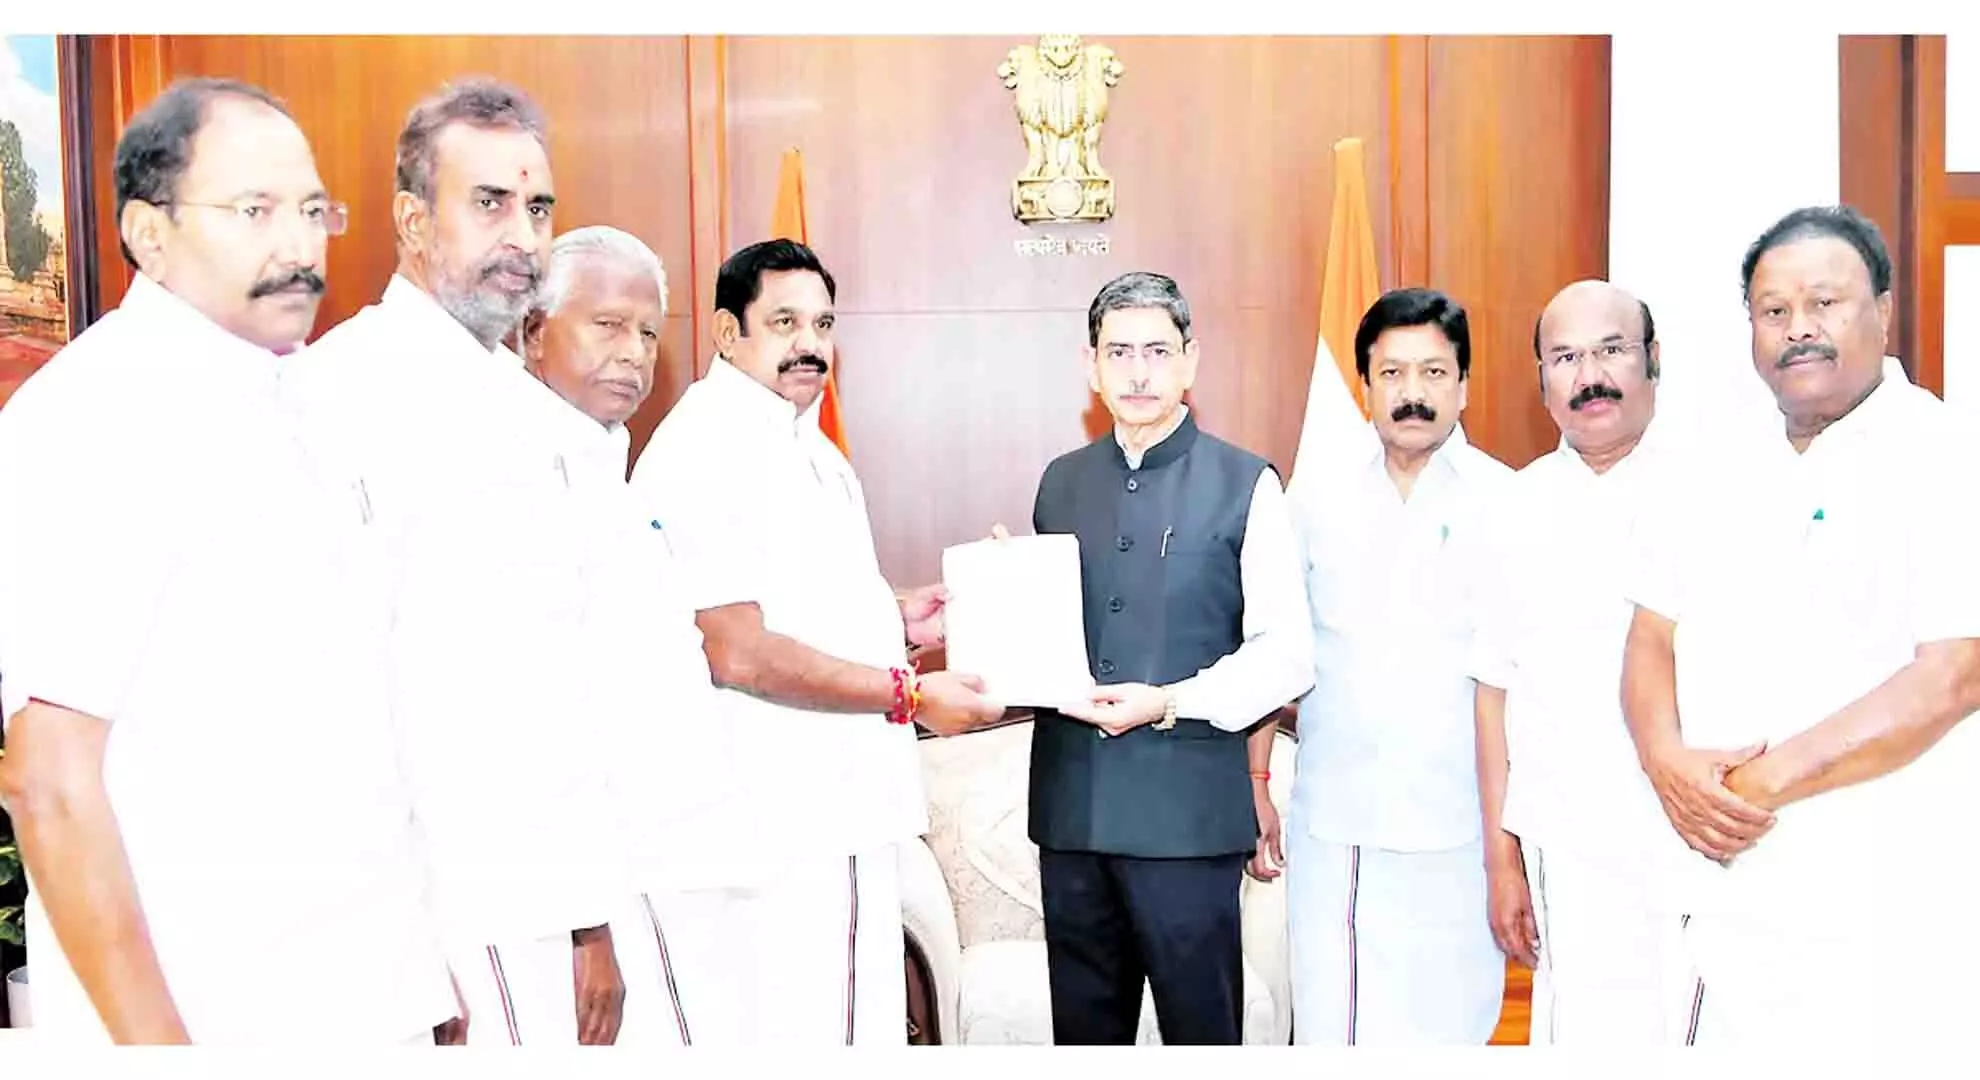 तमिलनाडु के संवैधानिक प्रमुख के रूप में, राज्य को नशीली दवाओं के खतरे से बचाएं